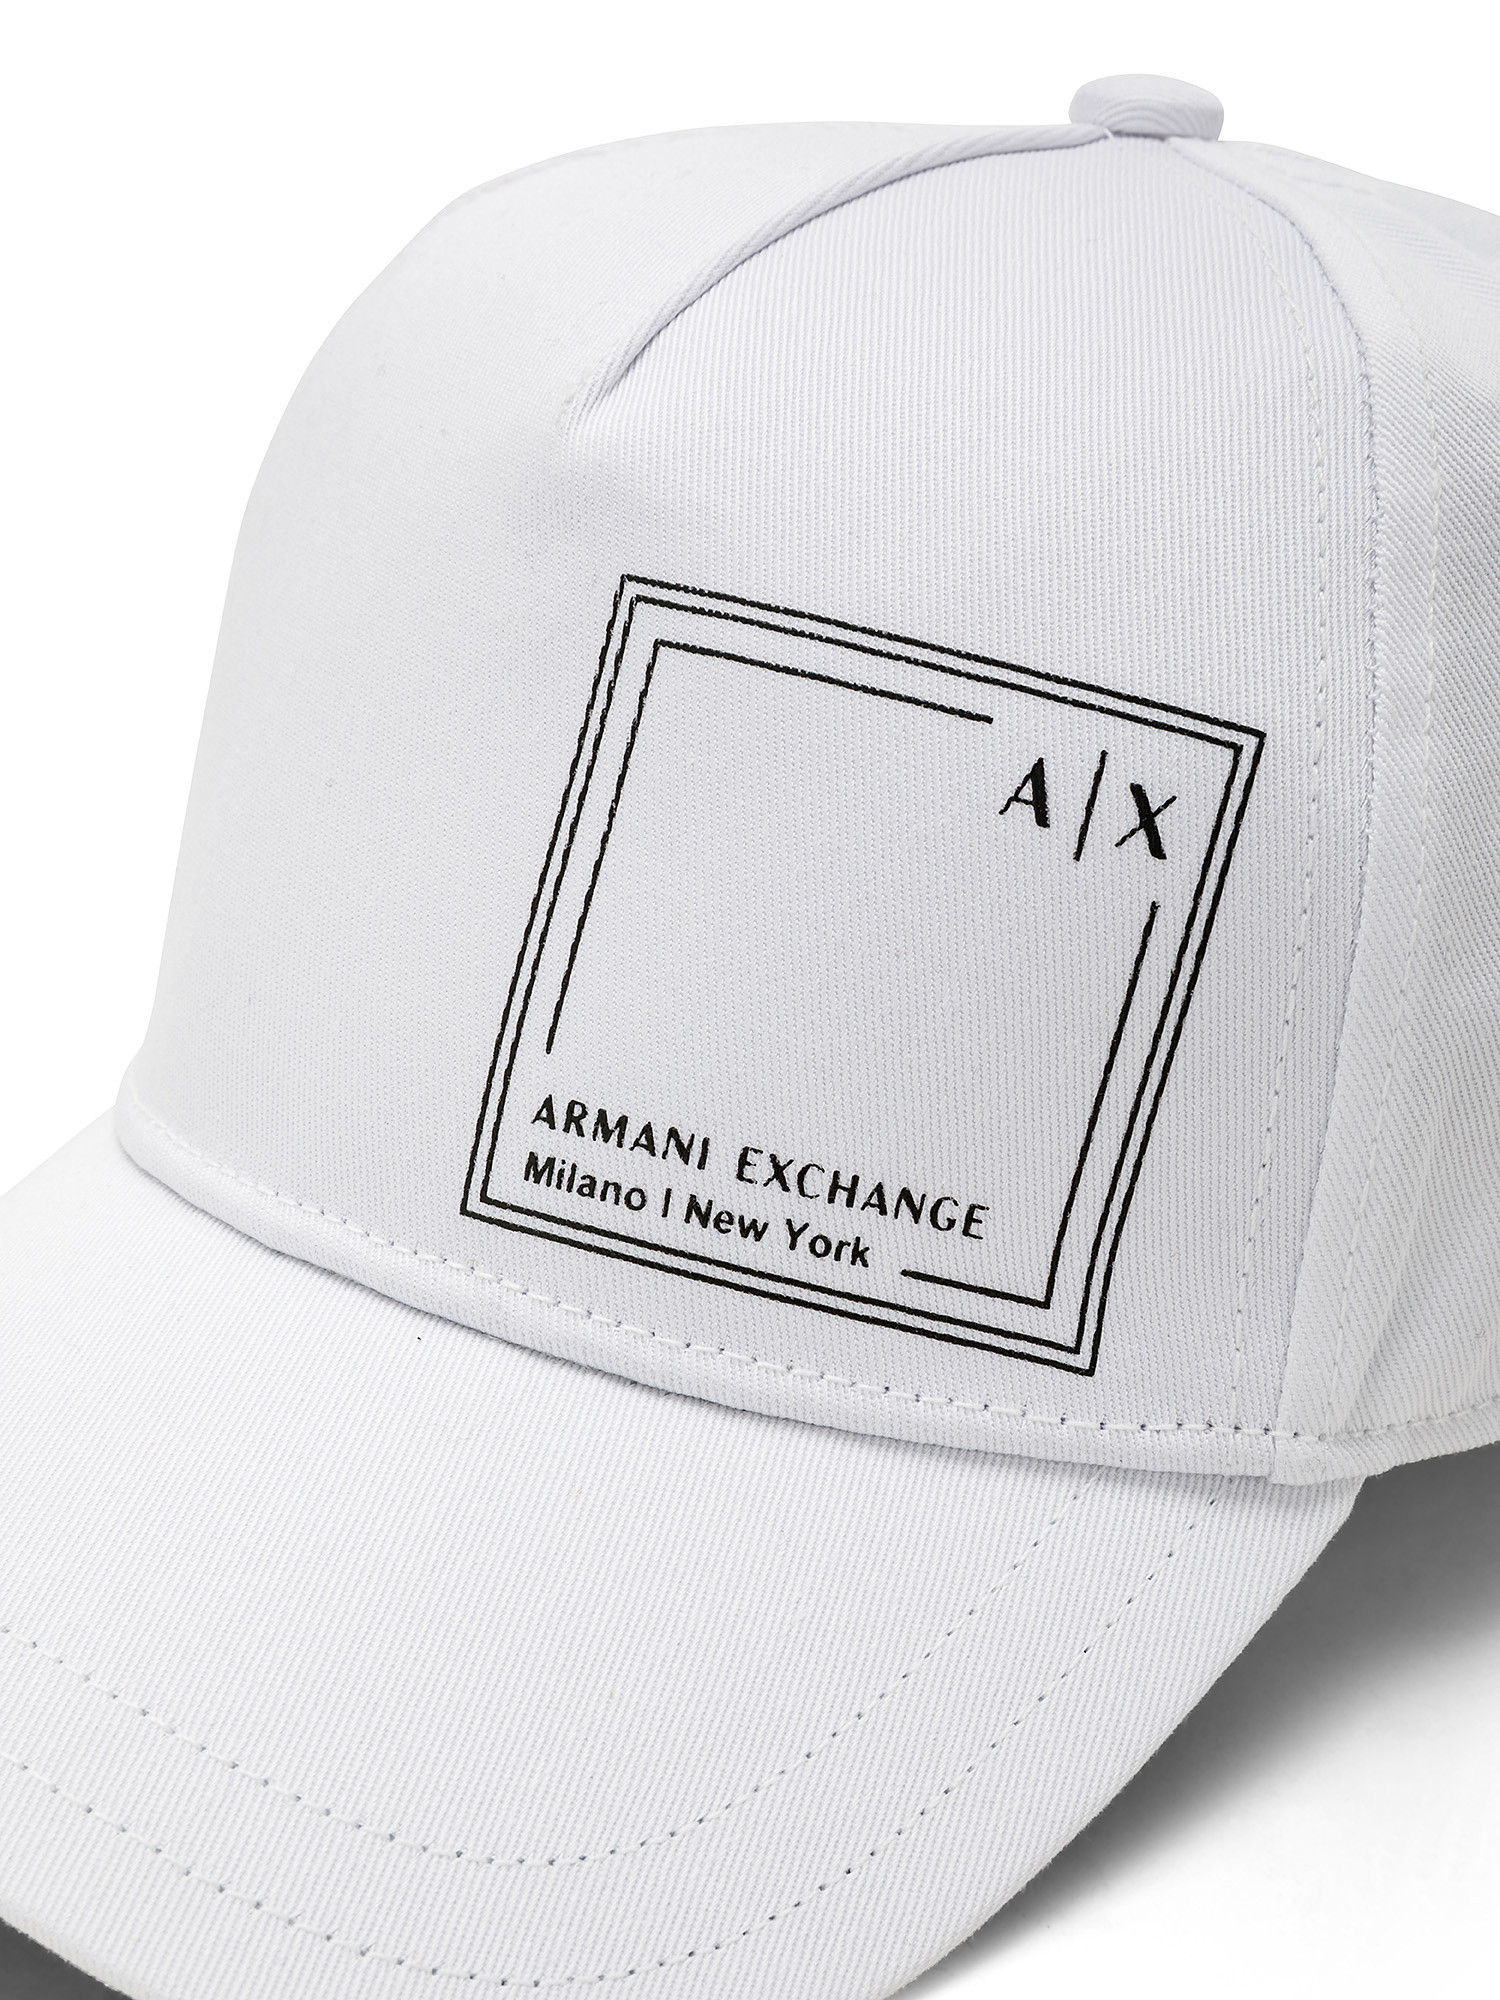 Armani Exchange - Cotton baseball cap, White, large image number 1